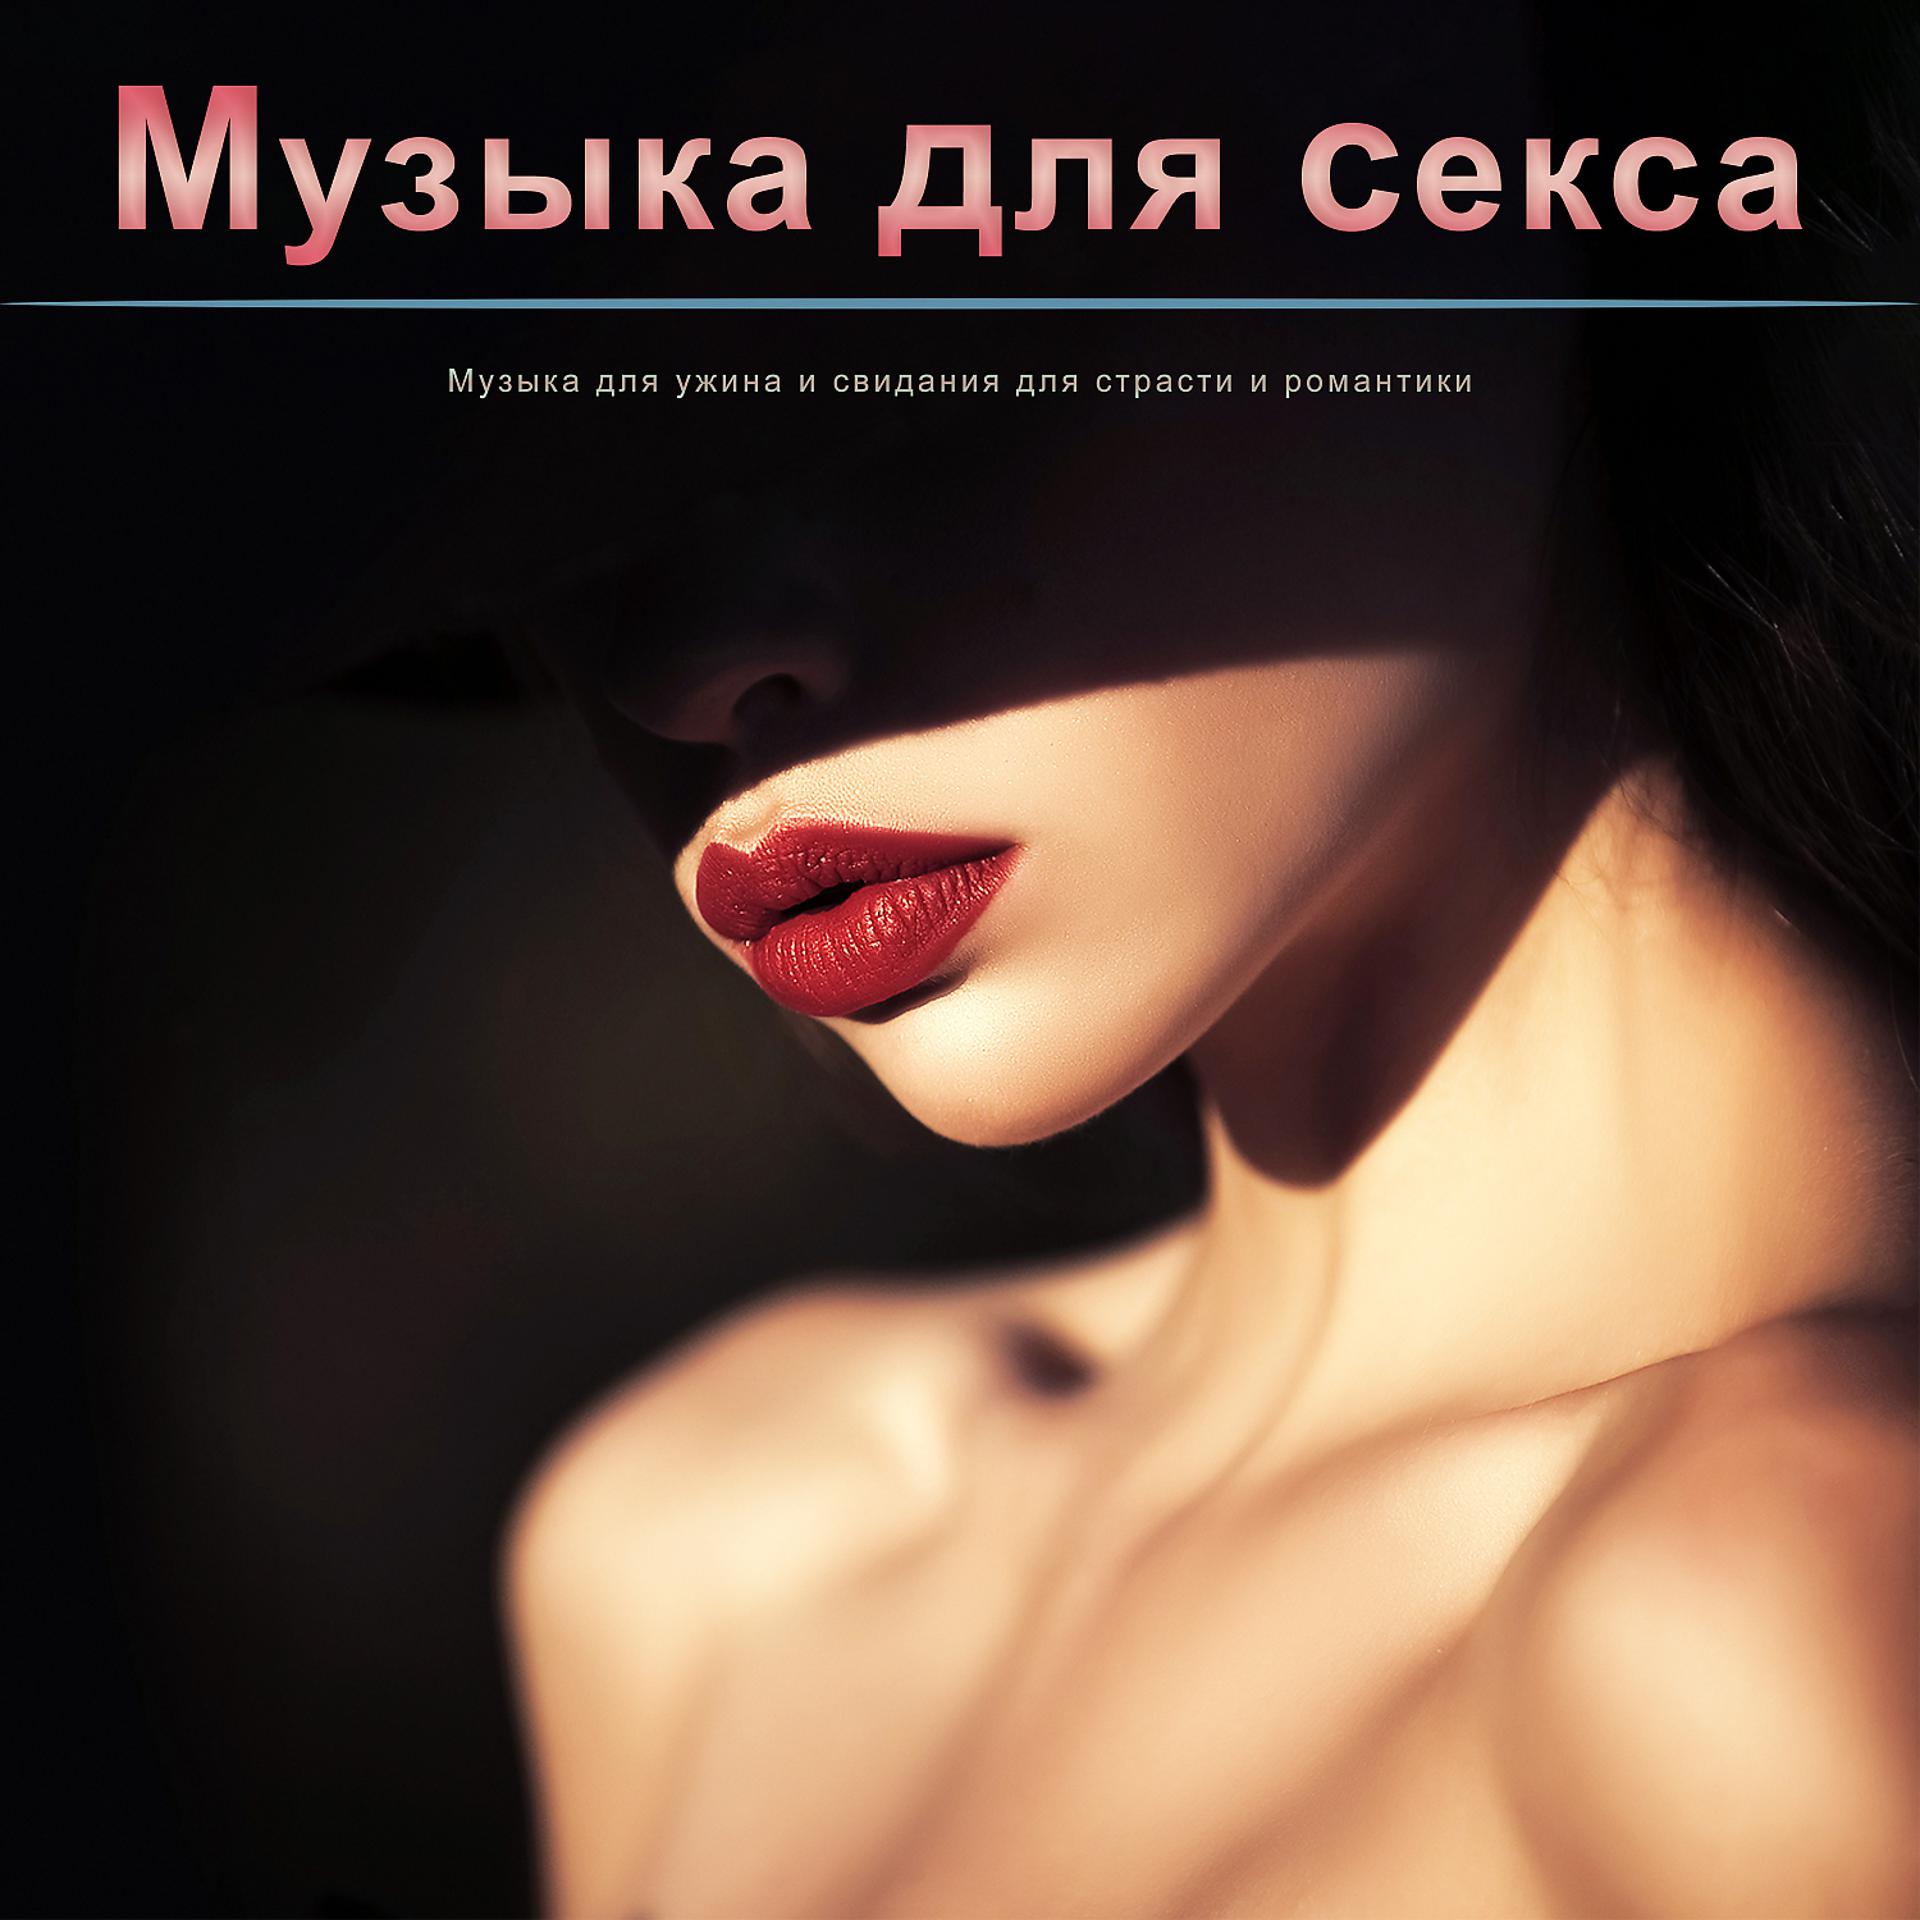 Постер альбома Музыка для секса: Музыка для ужина и свидания для страсти и романтики